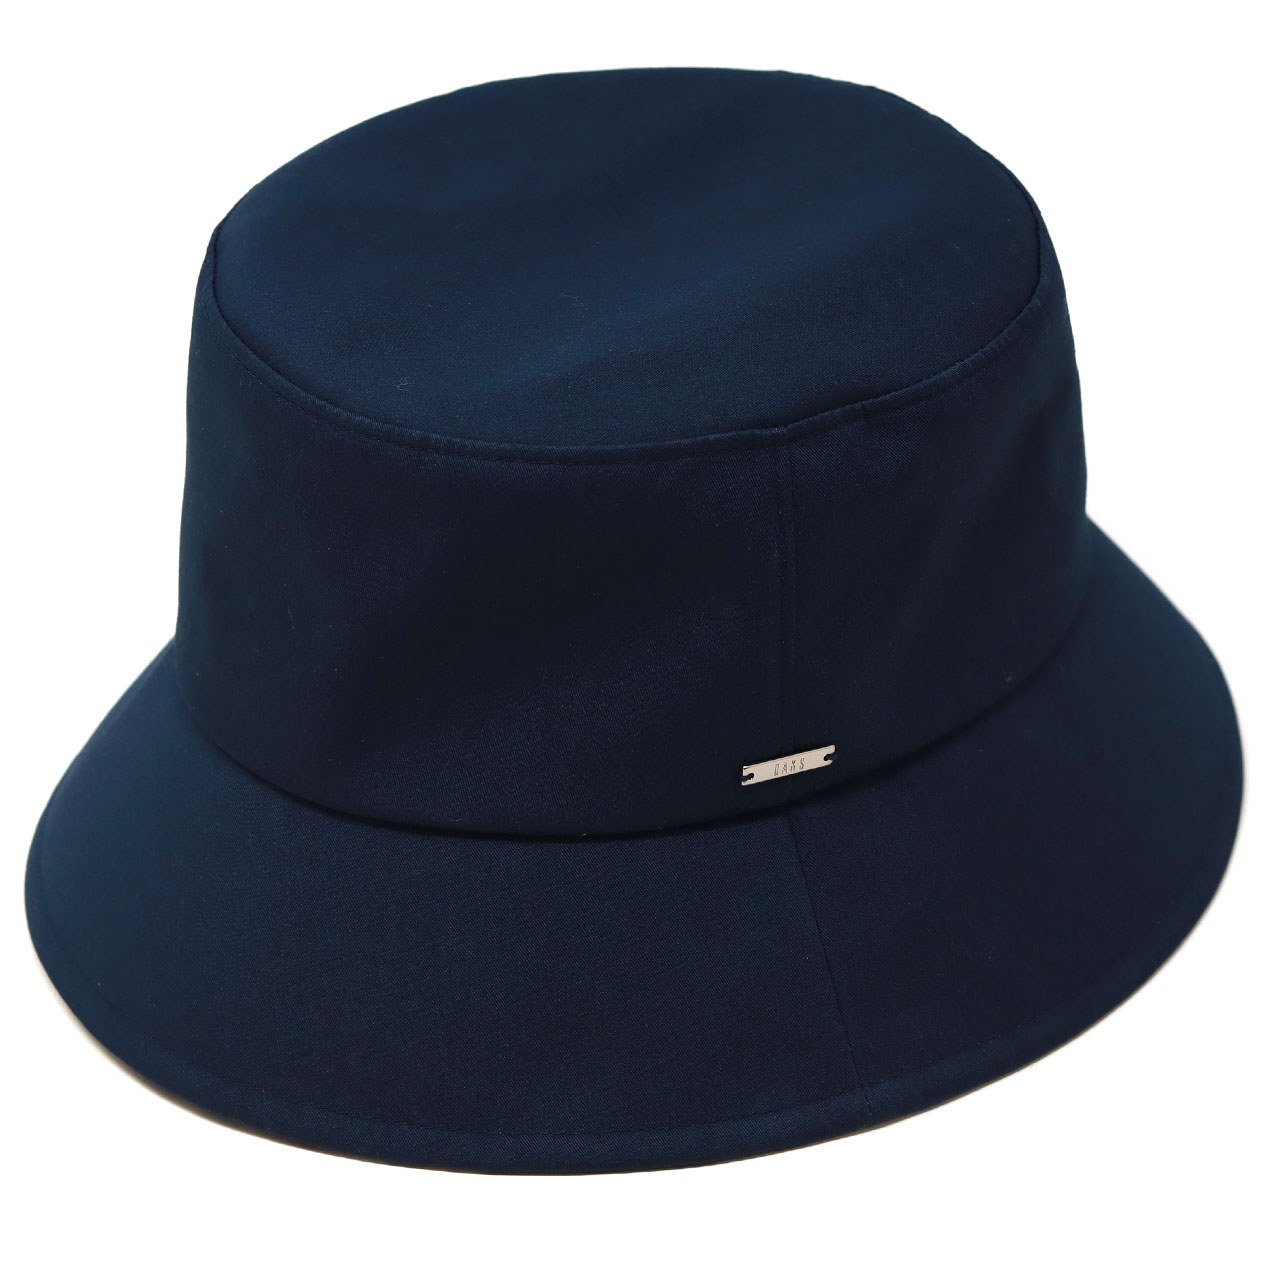 ダックス レディース ダックス 帽子 バケットハット 紫外線対策 ハウスチェック柄  婦人 帽子 D...